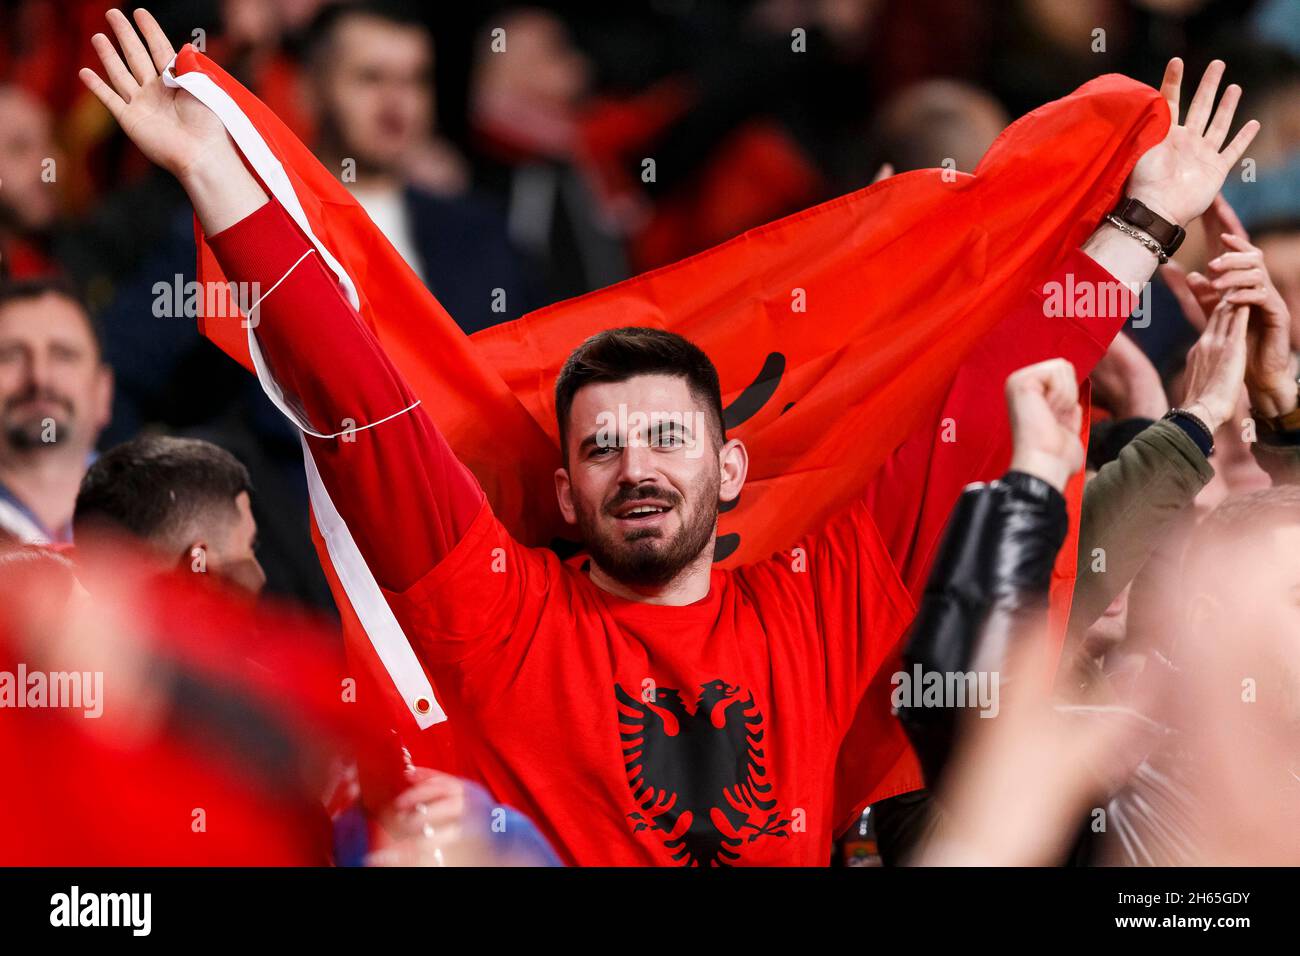 Londres, Royaume-Uni.12 novembre 2021.Albanie fans lors de la coupe du monde de la FIFA 2022 qualification Groupe I match entre l'Angleterre et l'Albanie au stade Wembley le 12 novembre 2021 à Londres, Angleterre.(Photo de Daniel Chesterton/phcimages.com) Credit: PHC Images/Alamy Live News Banque D'Images